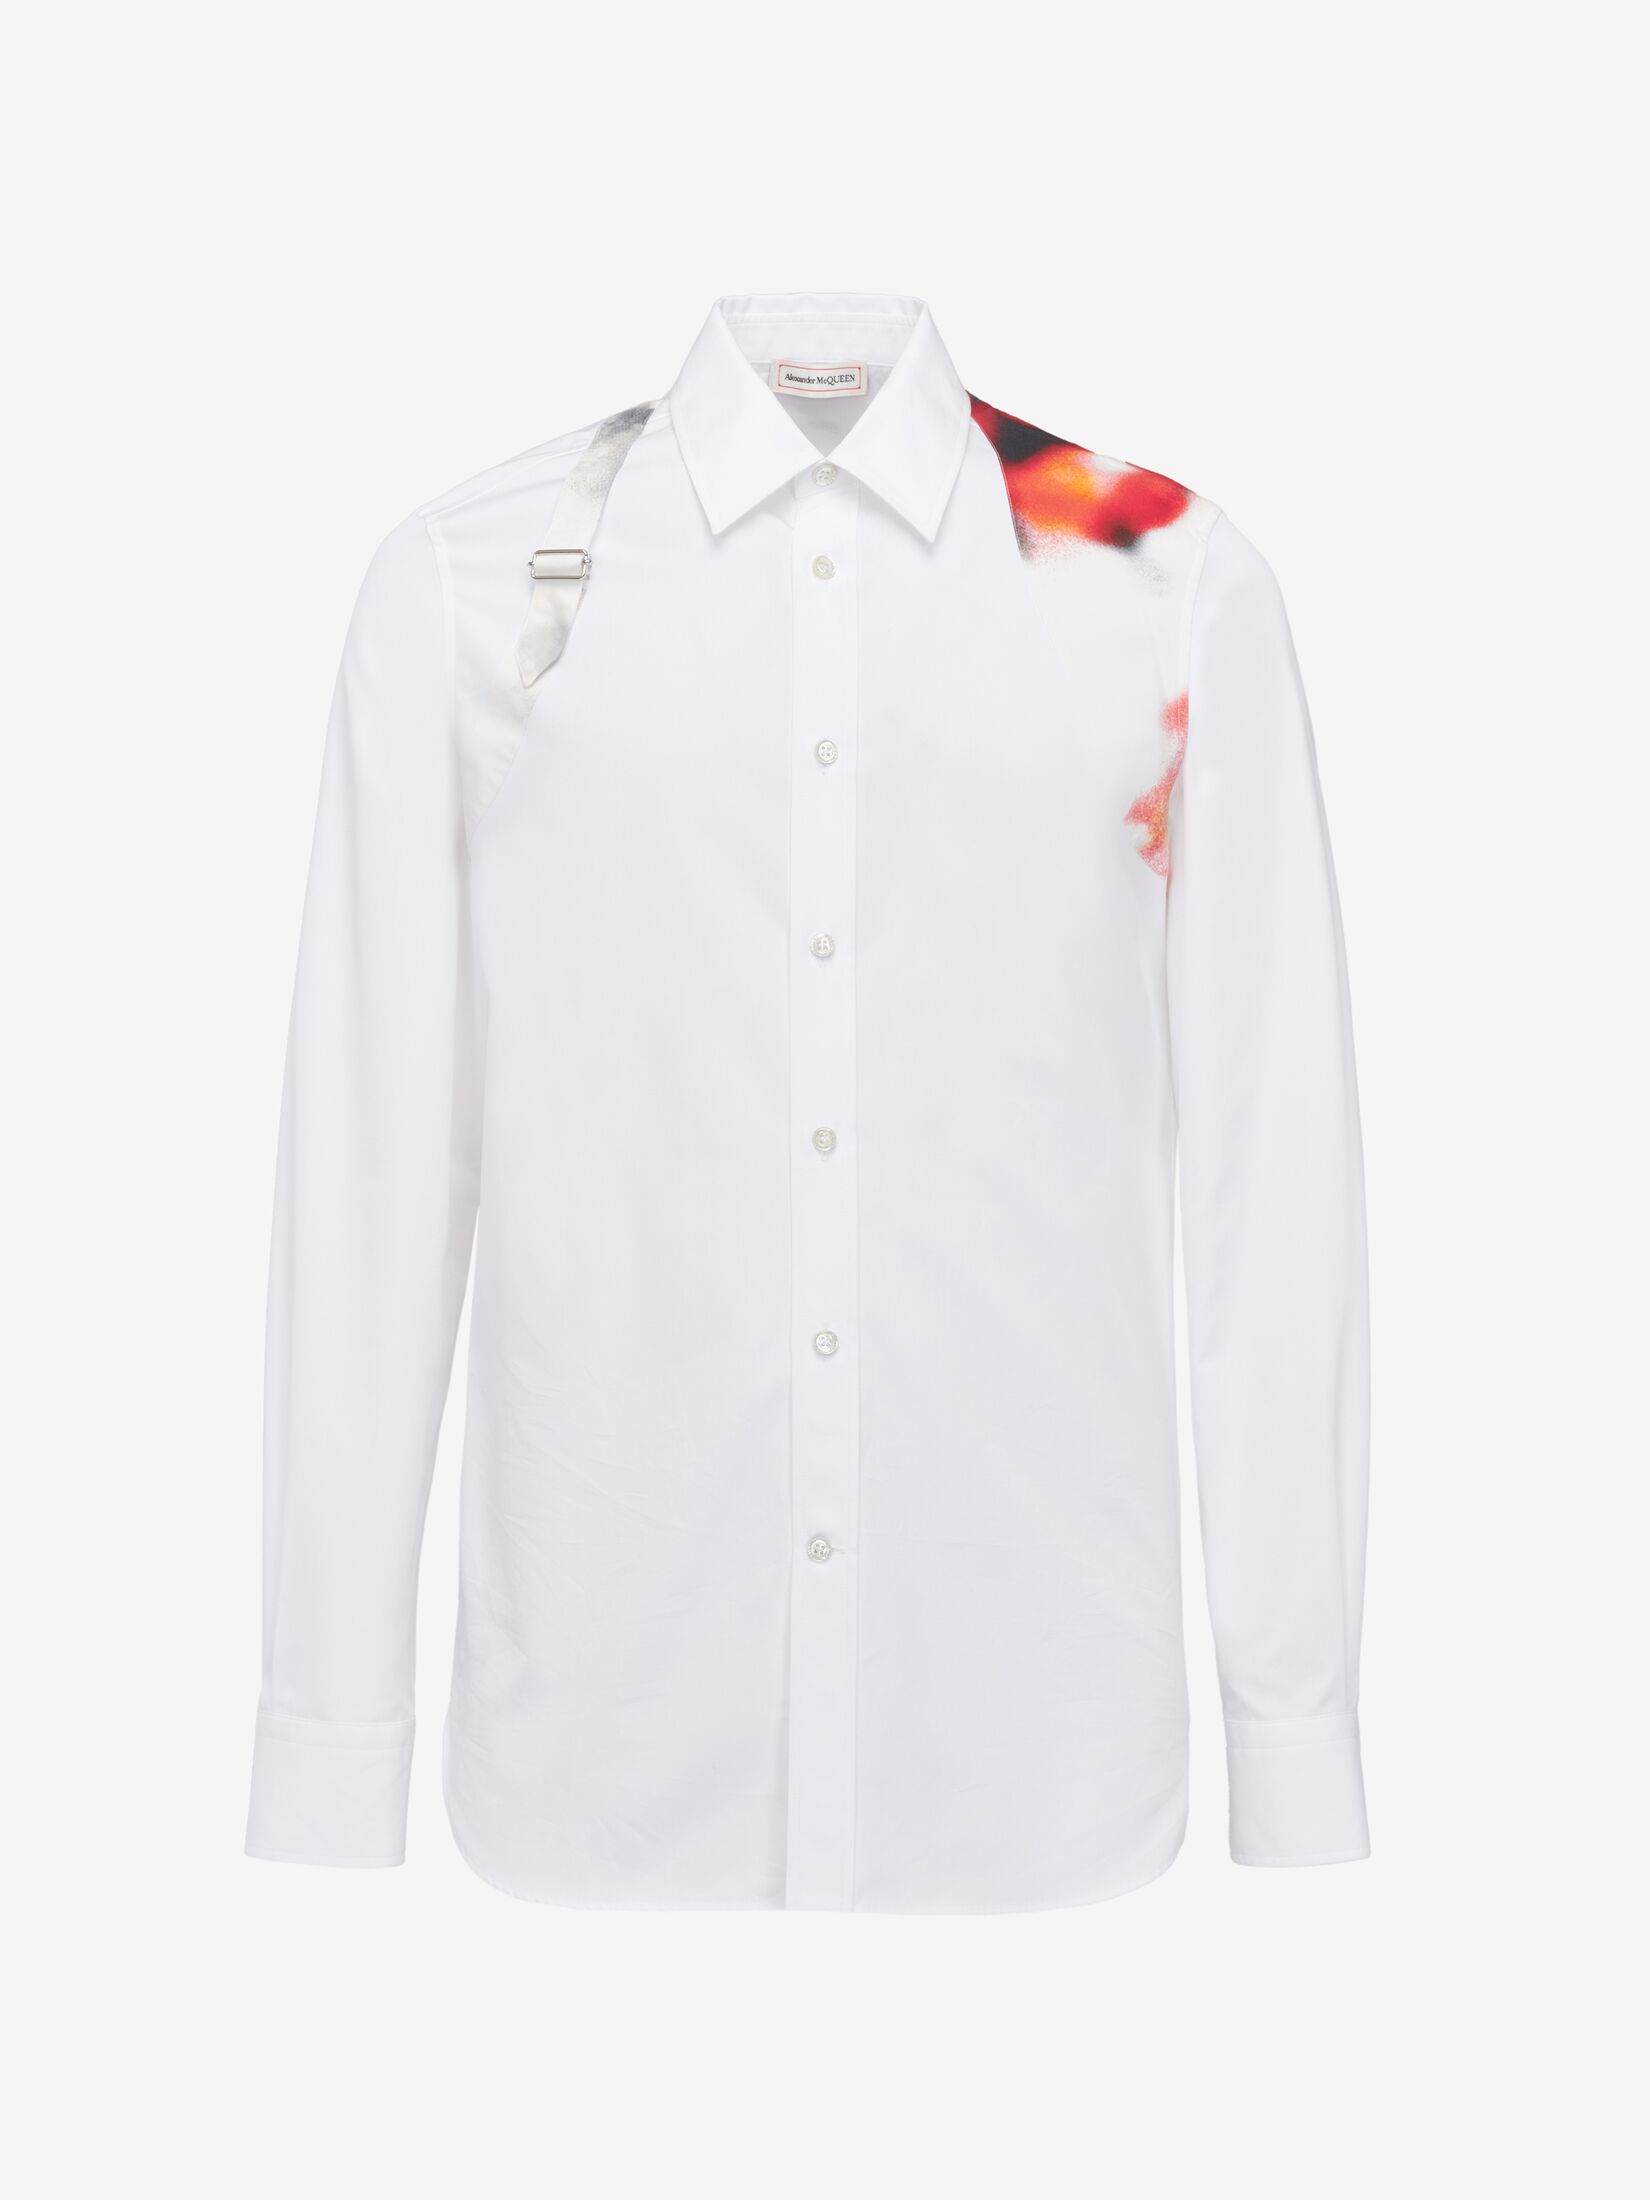 Bowlingshirt mit Obscured Flower-Gutband-Motiv